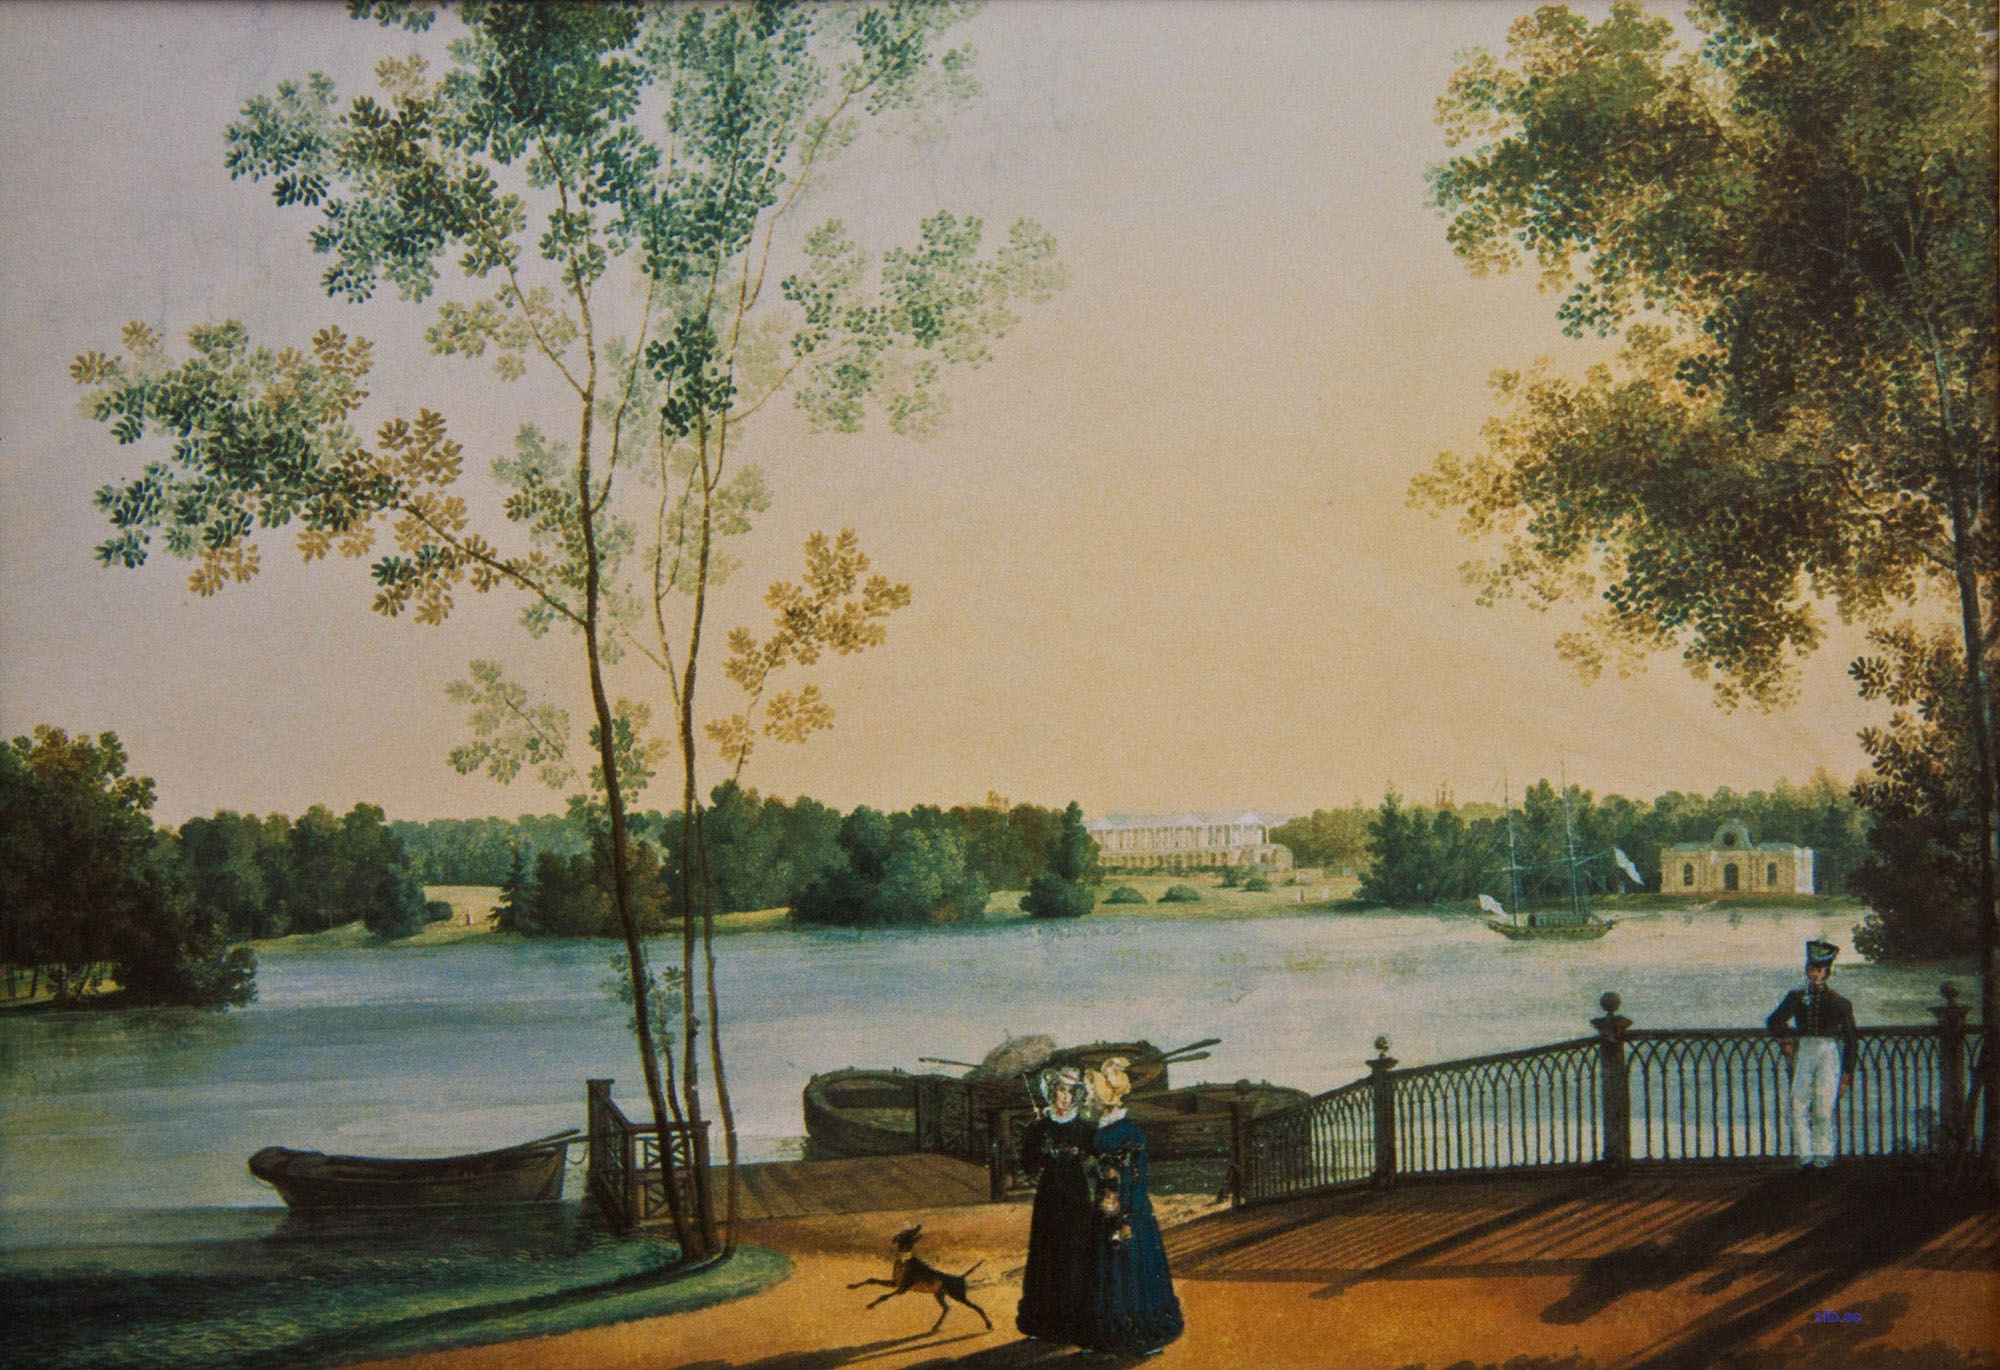 Неизвестный художник. "Вид на Большое озеро в Екатерининском парке Царского Села". 1820-е.